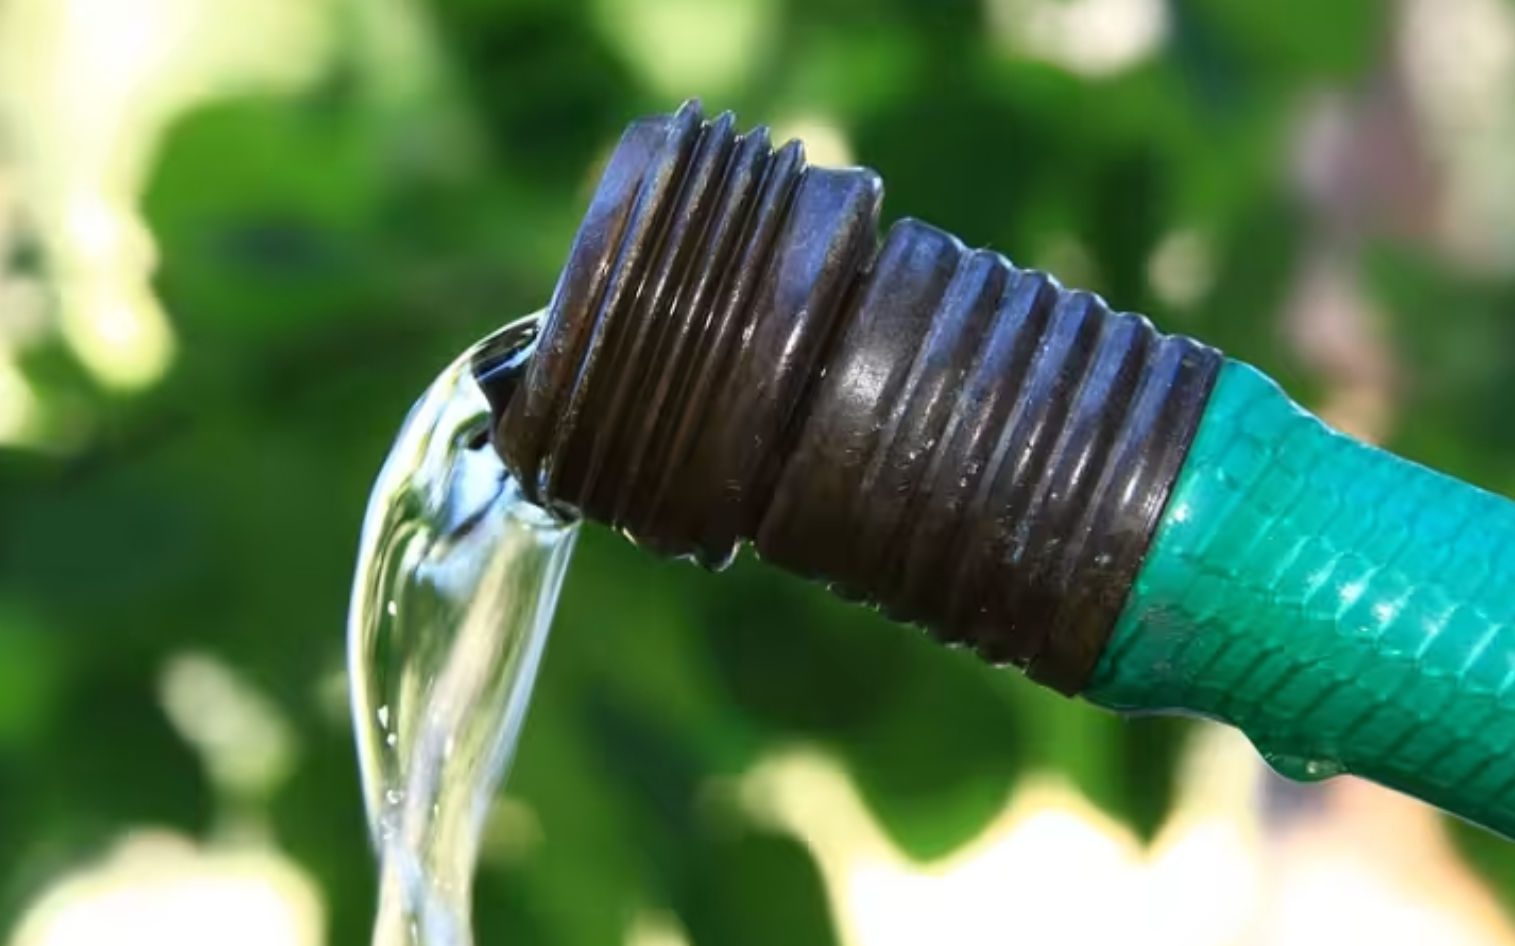 Εύβοια: Σοβαρό πρόβλημα με το νερό – «Μην ποτίζετε, θα επιβληθούν πρόστιμα»